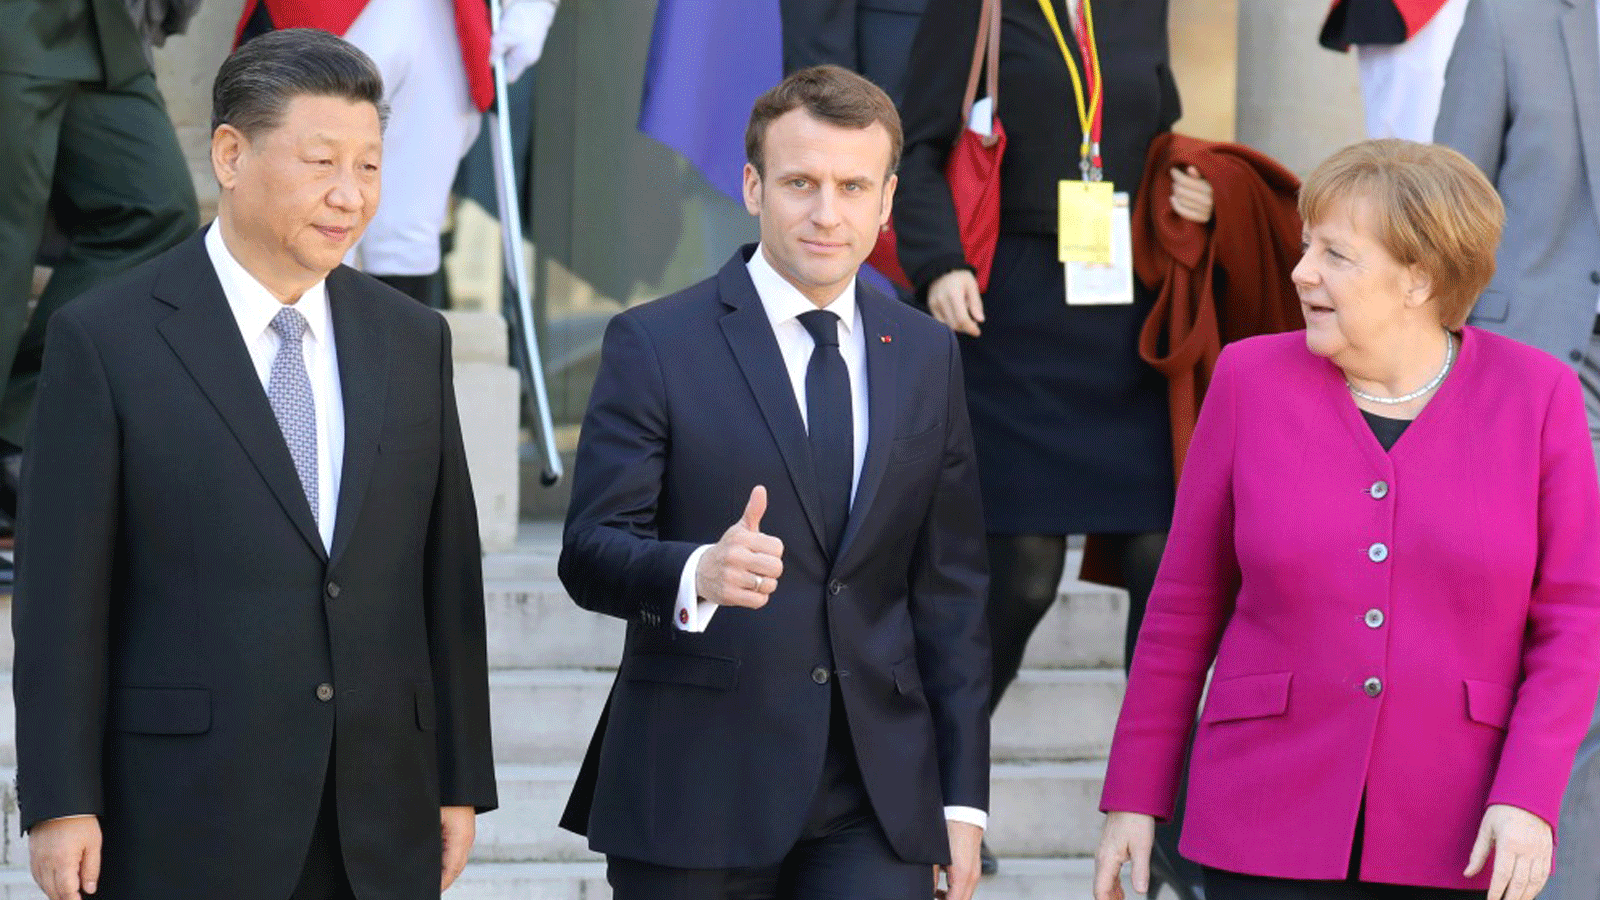 الرئيس الفرنسي إيمانويل ماكرون يتوسط المستشارة الألمانية أنجيلا ميركل والرئيس الصيني شي جين بينغ عقب اجتماعهم في قصر الإليزيه في باريس. 26 آذار/مارس 2019